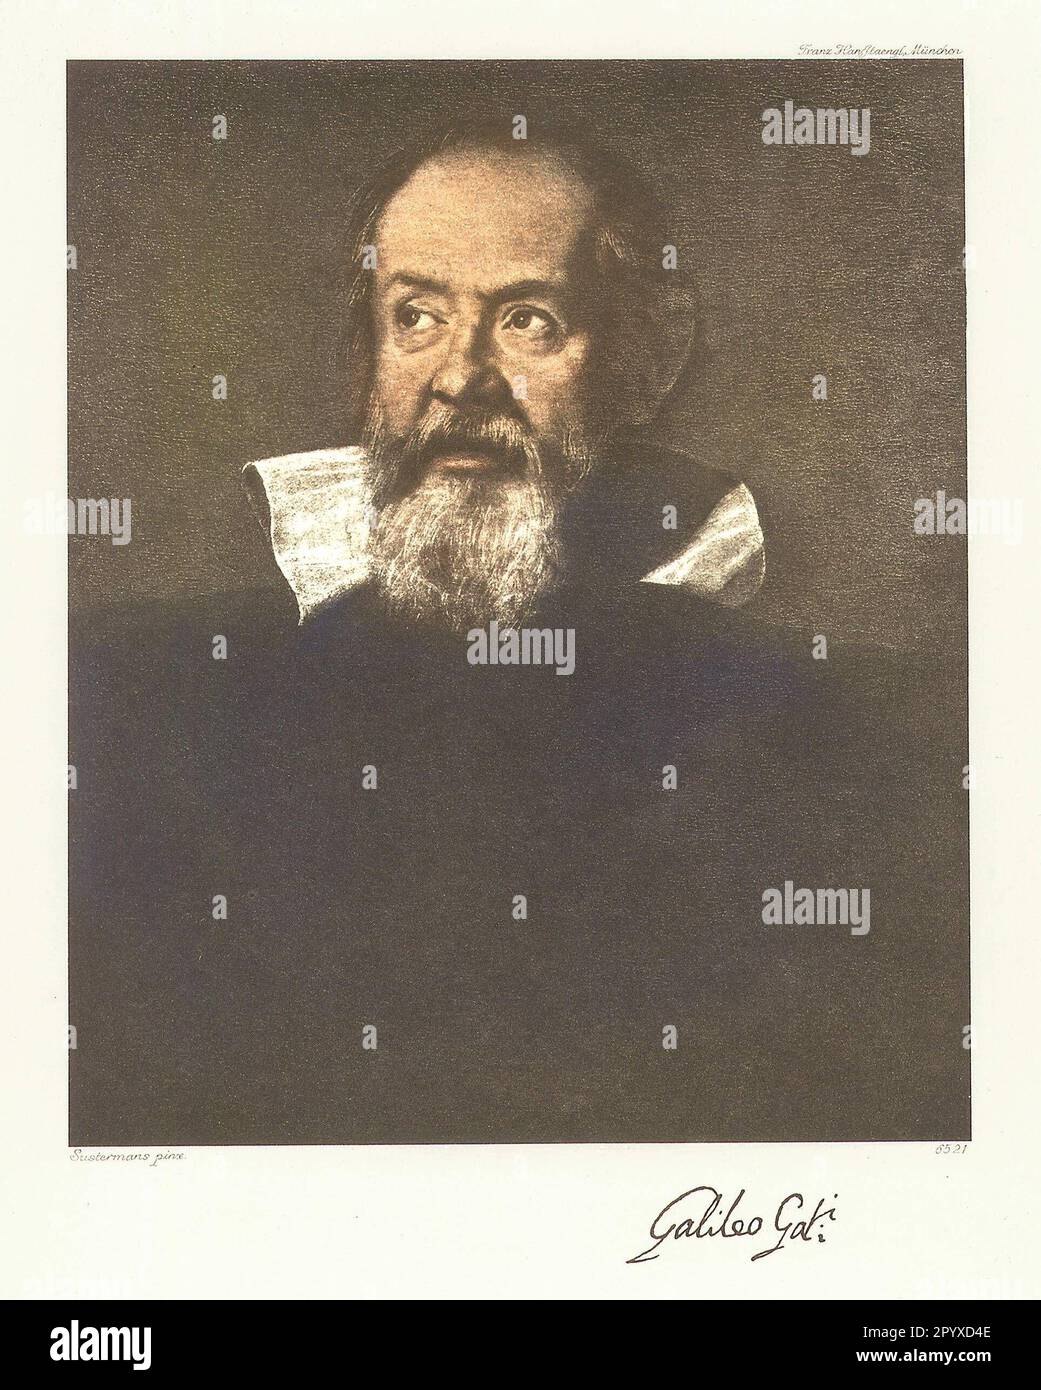 Galileo Galilei (1564-1642), italienischer Wissenschaftler und Philosoph. Gemälde von Justus Sustermans von 1636. Foto: Heliogravure, Corpus Imaginum, Hanfstaengl Collection. [Maschinelle Übersetzung] Stockfoto